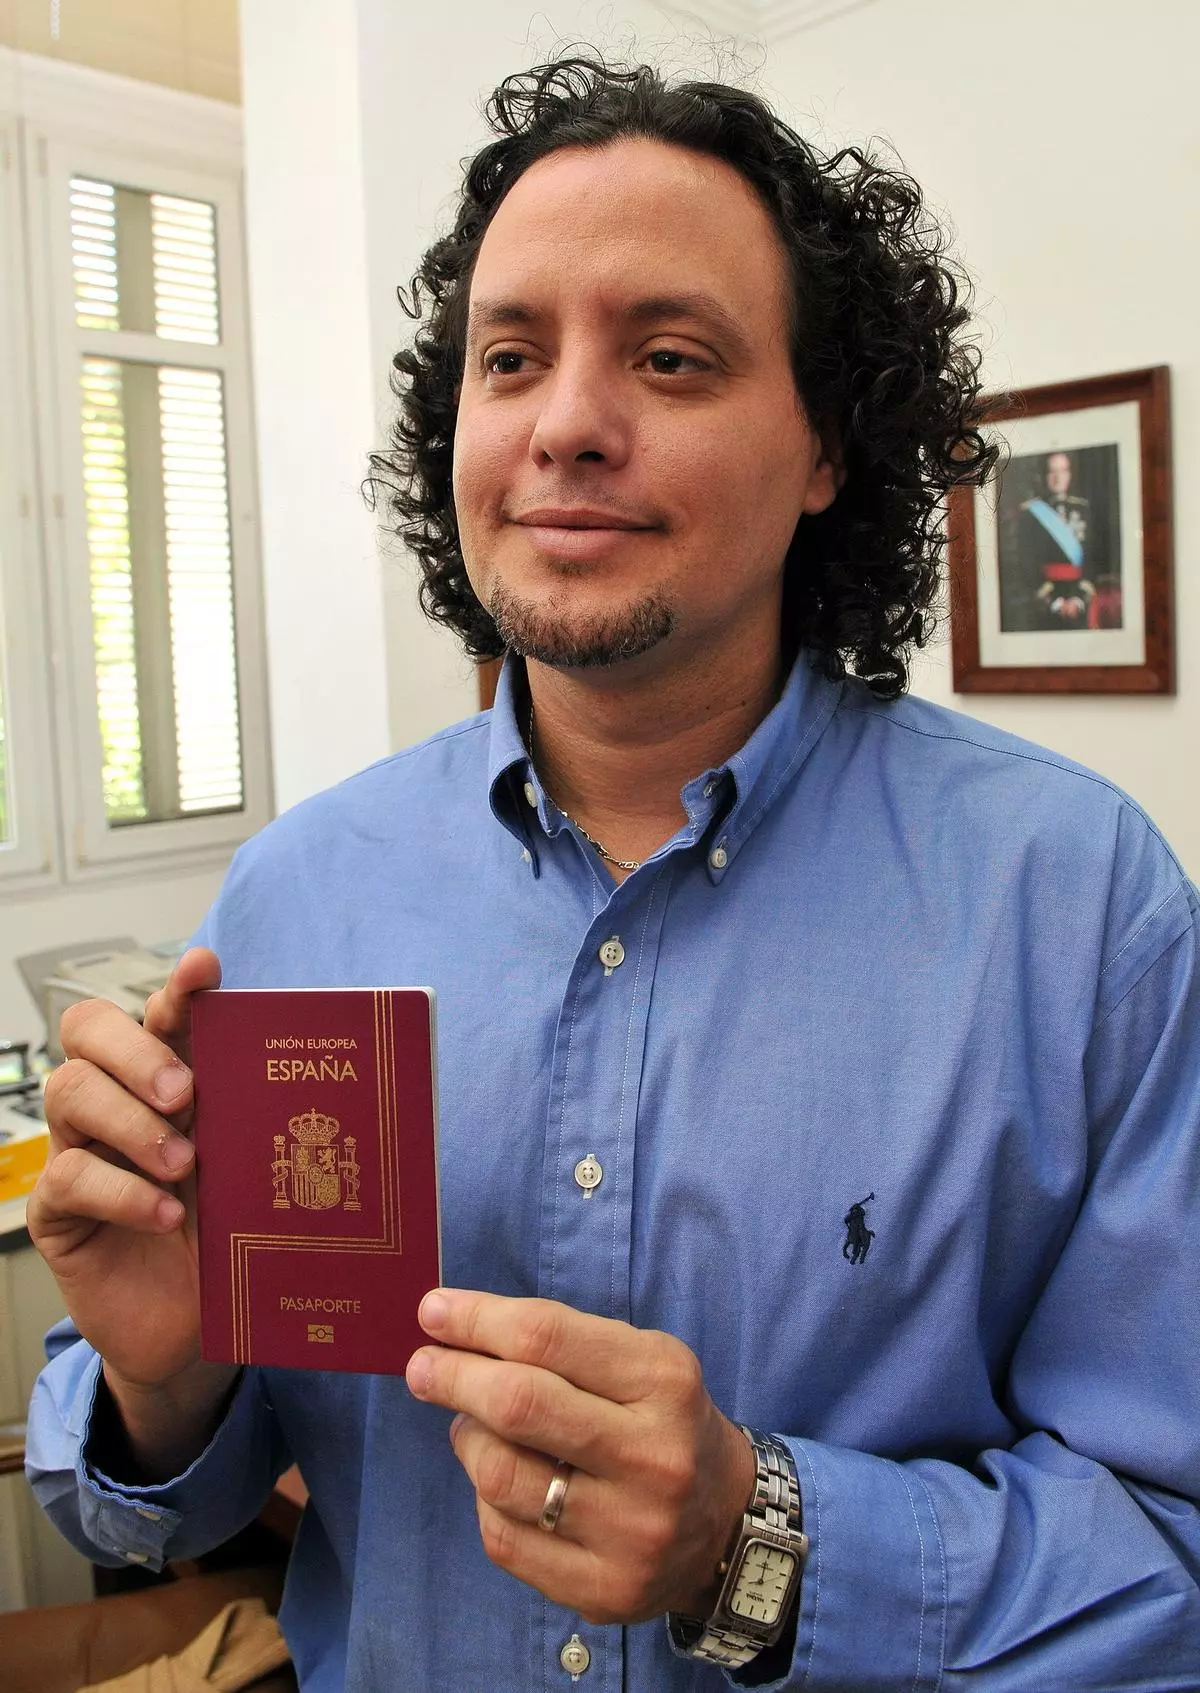 Estos son los motivos por los que te pueden retirar el pasaporte español